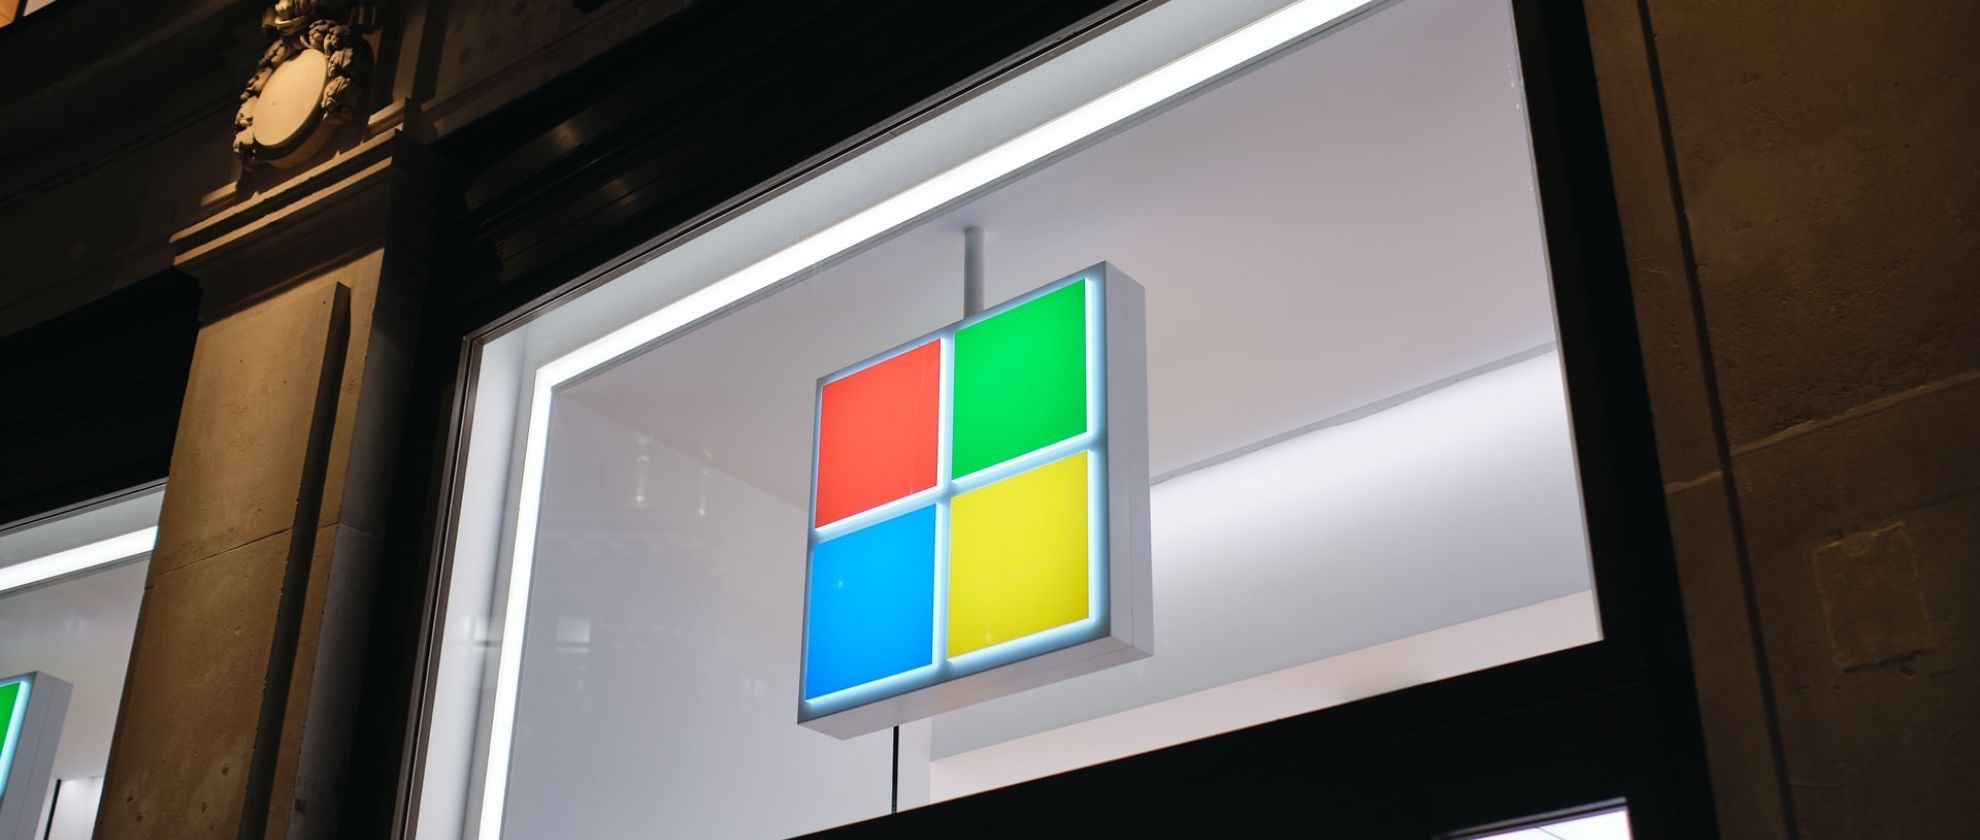 Microsoft logo in lights on a window